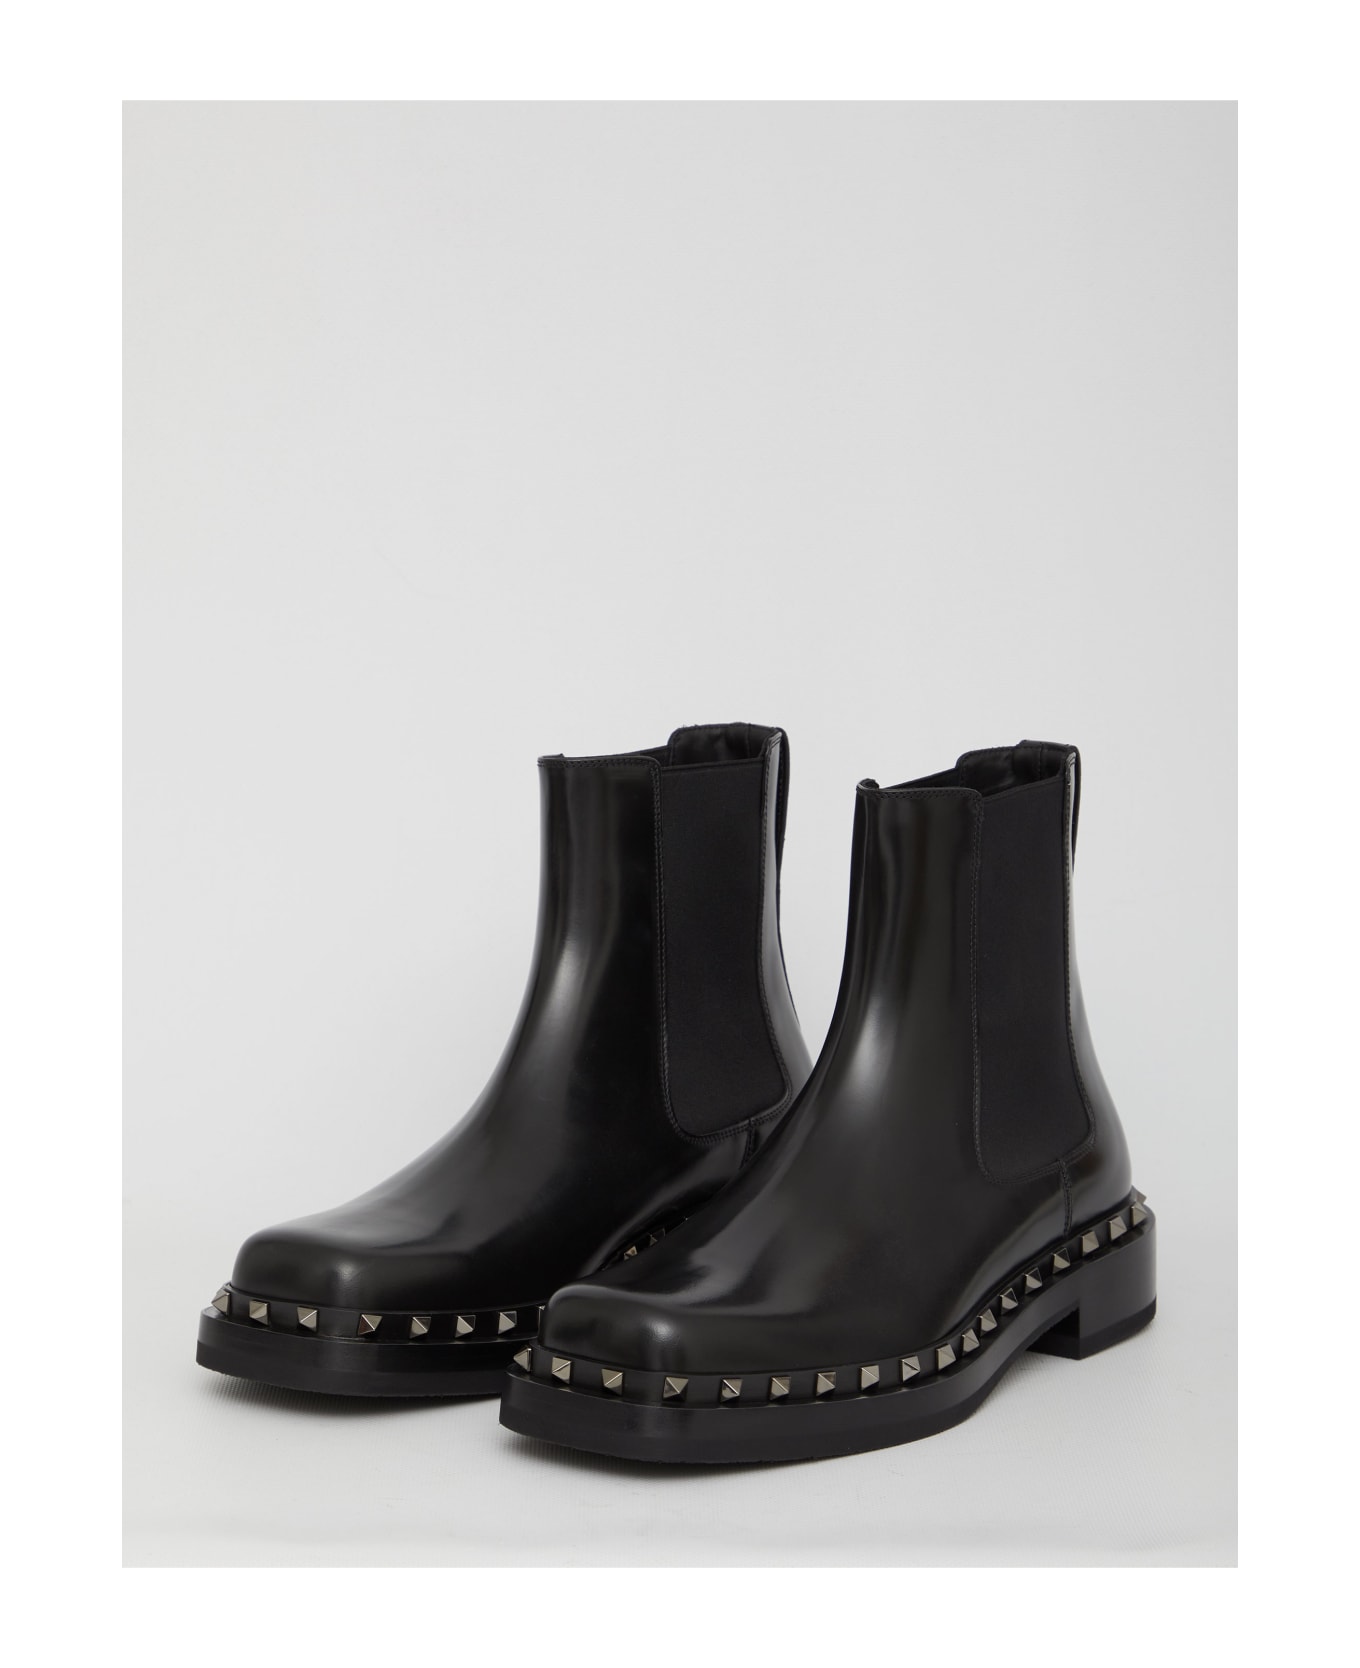 Valentino Garavani Rockstud M-way Boots - BLACK ブーツ